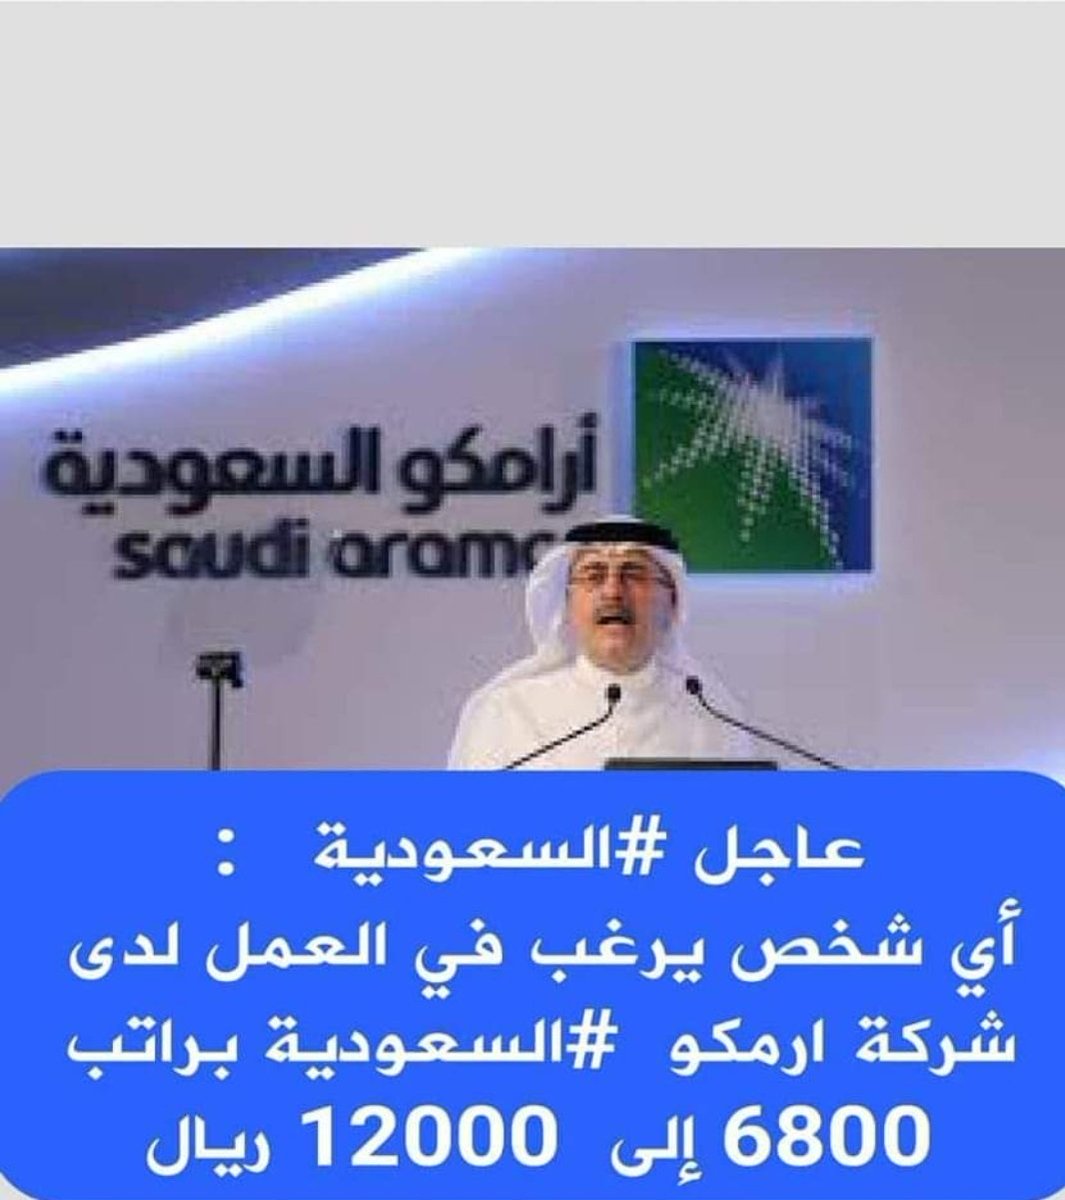 عاجل #السعودية : أي شخص يرغب في العمل لدى شركة بترول السعودية #ارامكو #السعودية براتب 6800 إلى 12000 ريال . للتسجيل والتقديم للوظائف من الروابط التالية👇 now.fjralyemen.com/2022/09/blog-p… 📲👇 now.fjralyemen.com/2022/09/blog-p…